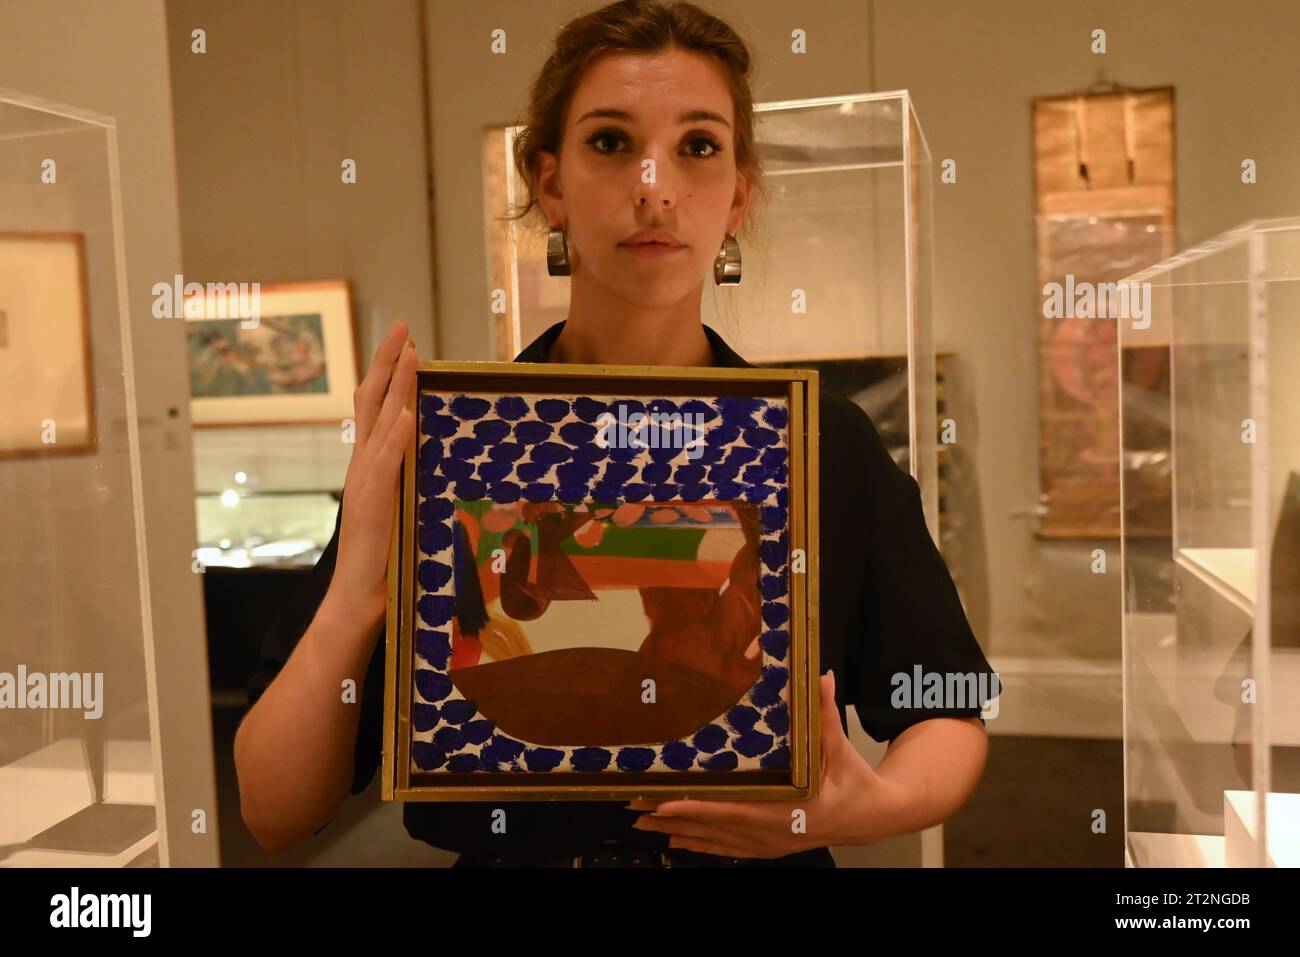 Le plus rare Astrolabe à apparaître aux enchères, vers 900 AD (estimation : £1 500 000-2 500 000) un exquis bol en verre doré et émaillé mamelouk du 14e siècle (estimation : £600,000-800,000) a Grey Pelican from the Impey Album, jadis conservé dans la collection de Jackie Kennedy (estimation : £120,000-180,000) trois peintures ottomanes majeures, dont un portrait du sultan Mehmet II datant du 17e siècle (estimation : 80 000 à 120 000 £) À CÔTÉ art arabe, turc et indien moderne et contemporain, y compris les toiles séminales de Fahrelnissa Zeid, Huguette Caland, Bhupen Khakhar & Manjit Bawa Banque D'Images